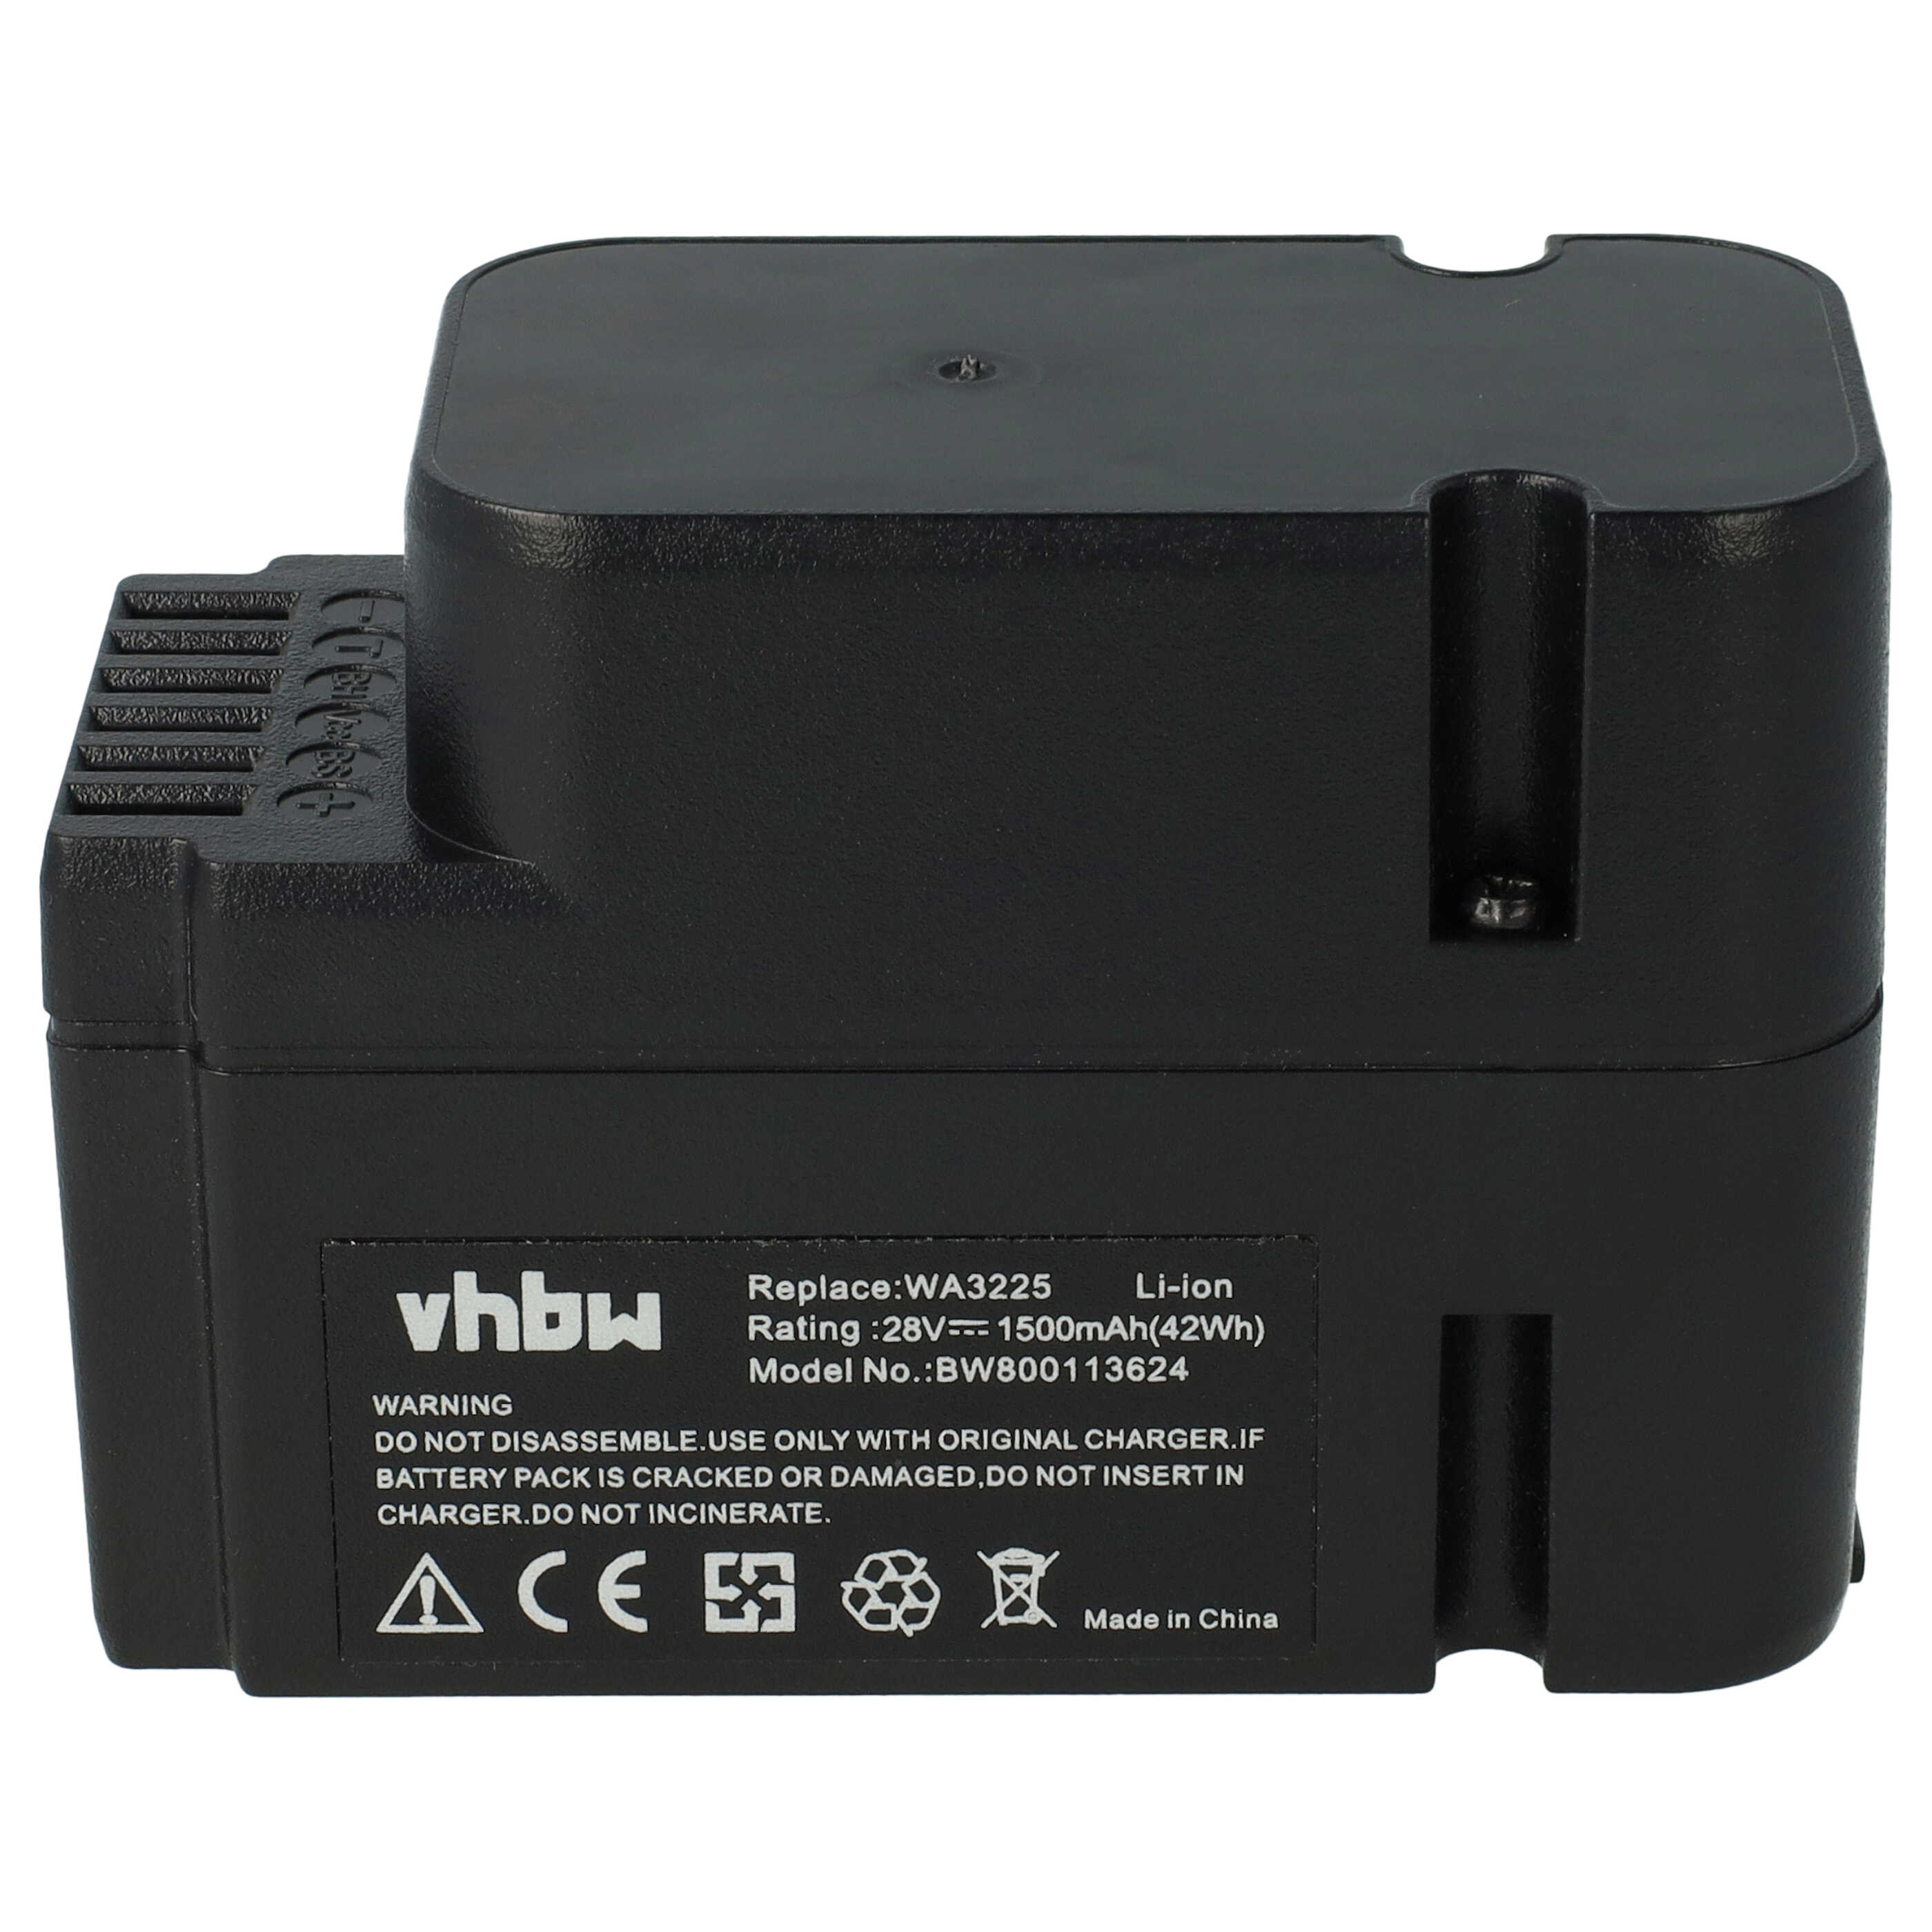 Batería reemplaza Worx WA3226, WA3225, WA3565 para herramientas de jardín Worx - 1500 mAh 28 V Li-Ion